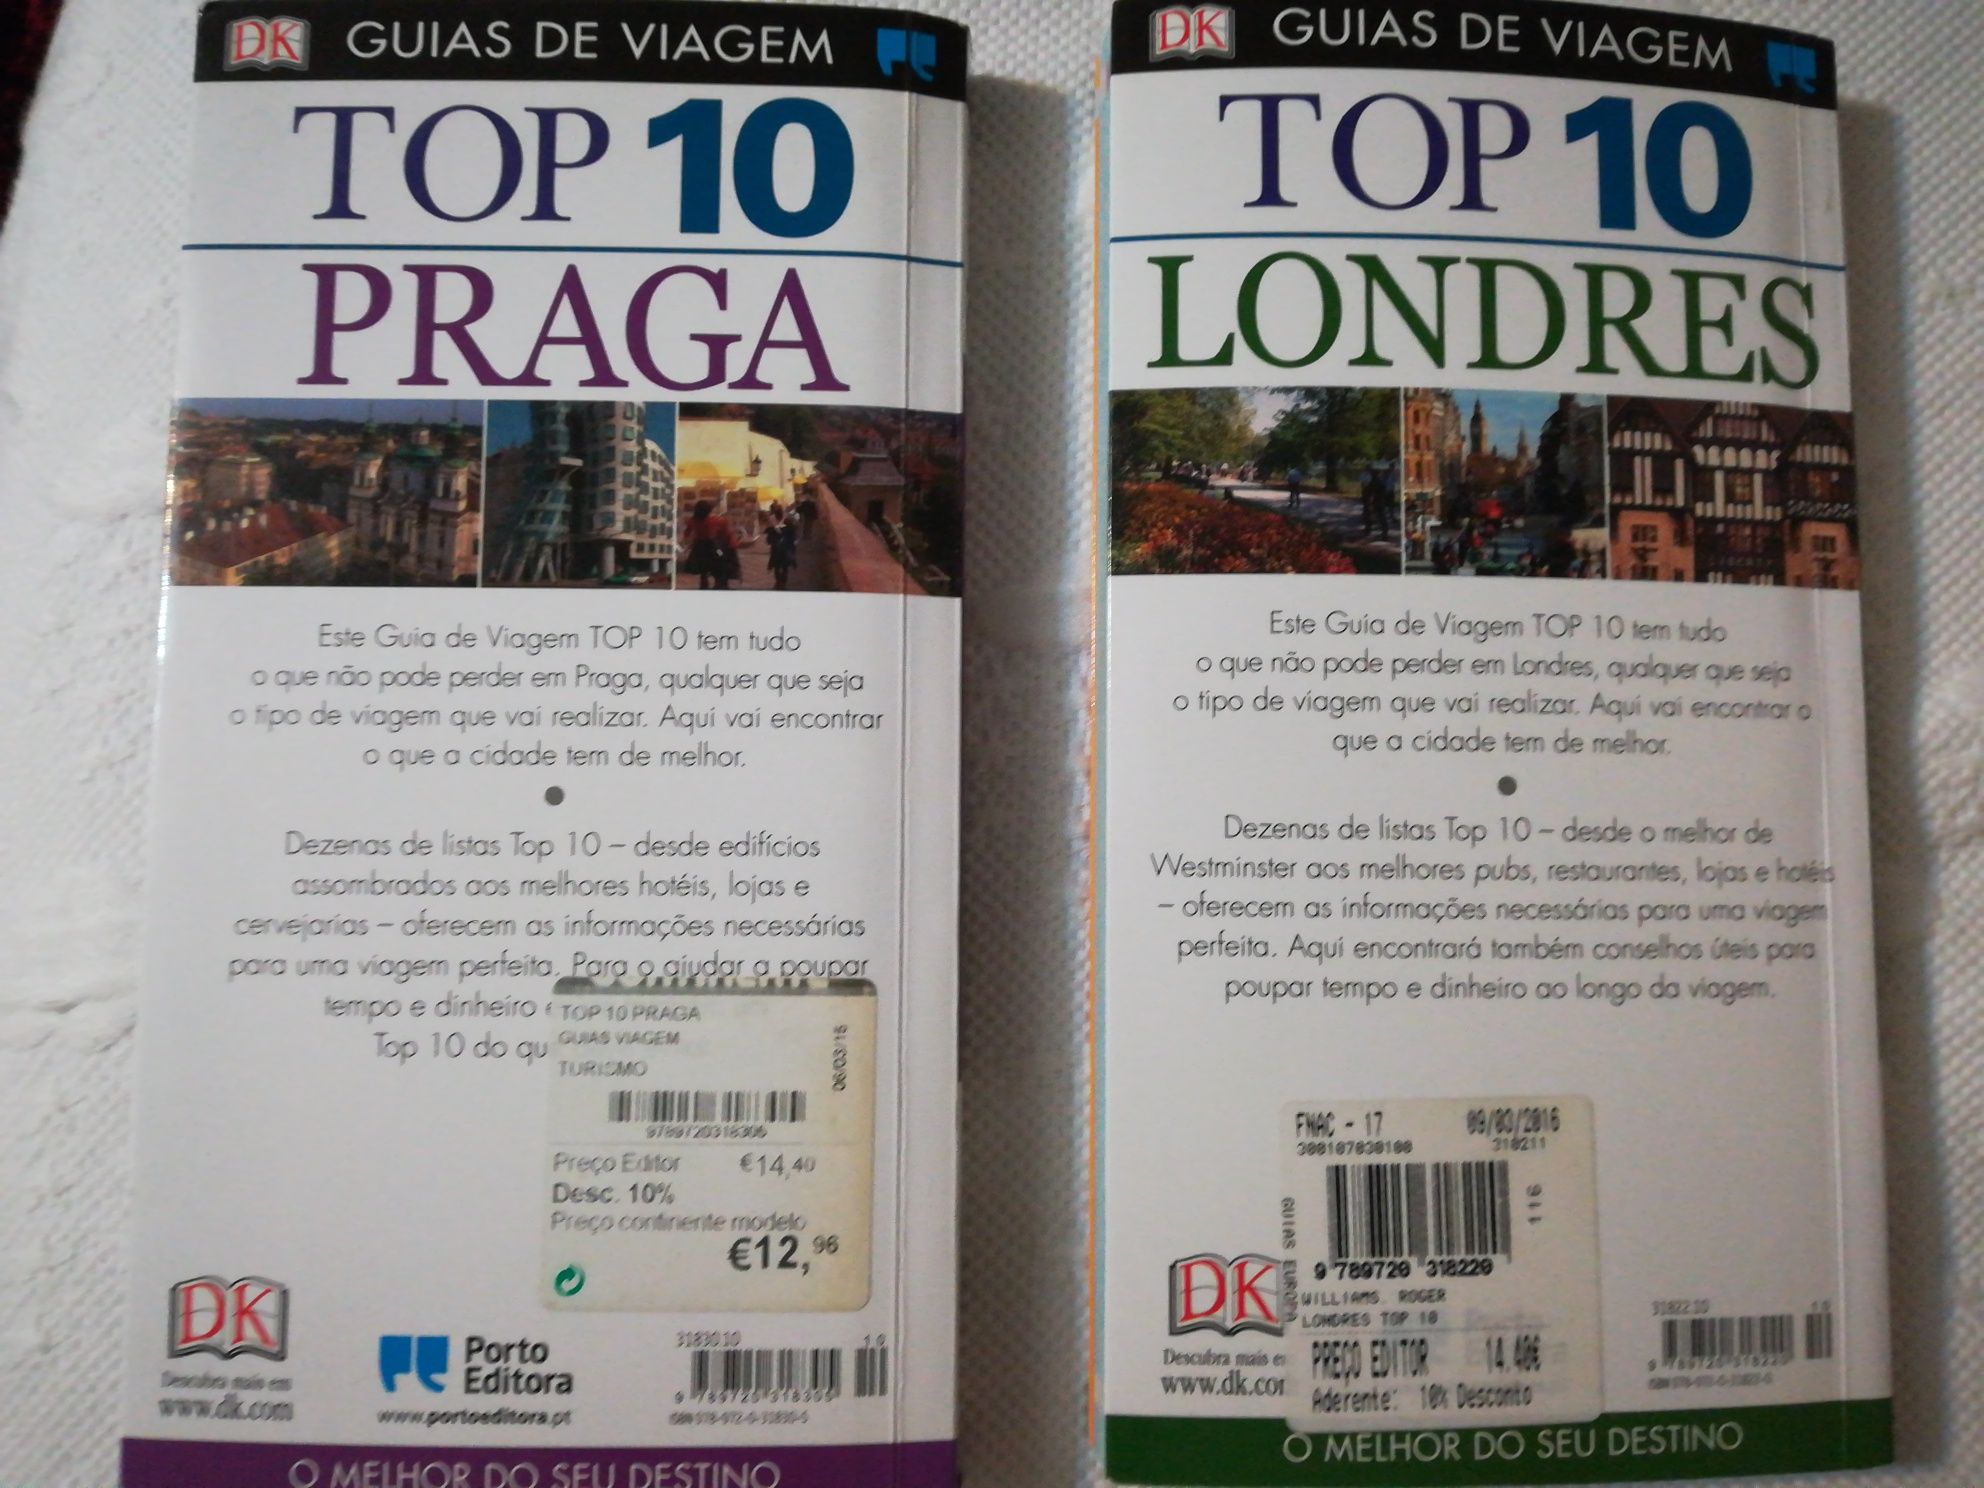 Guias de viagem: Praga, Londres e Cuba